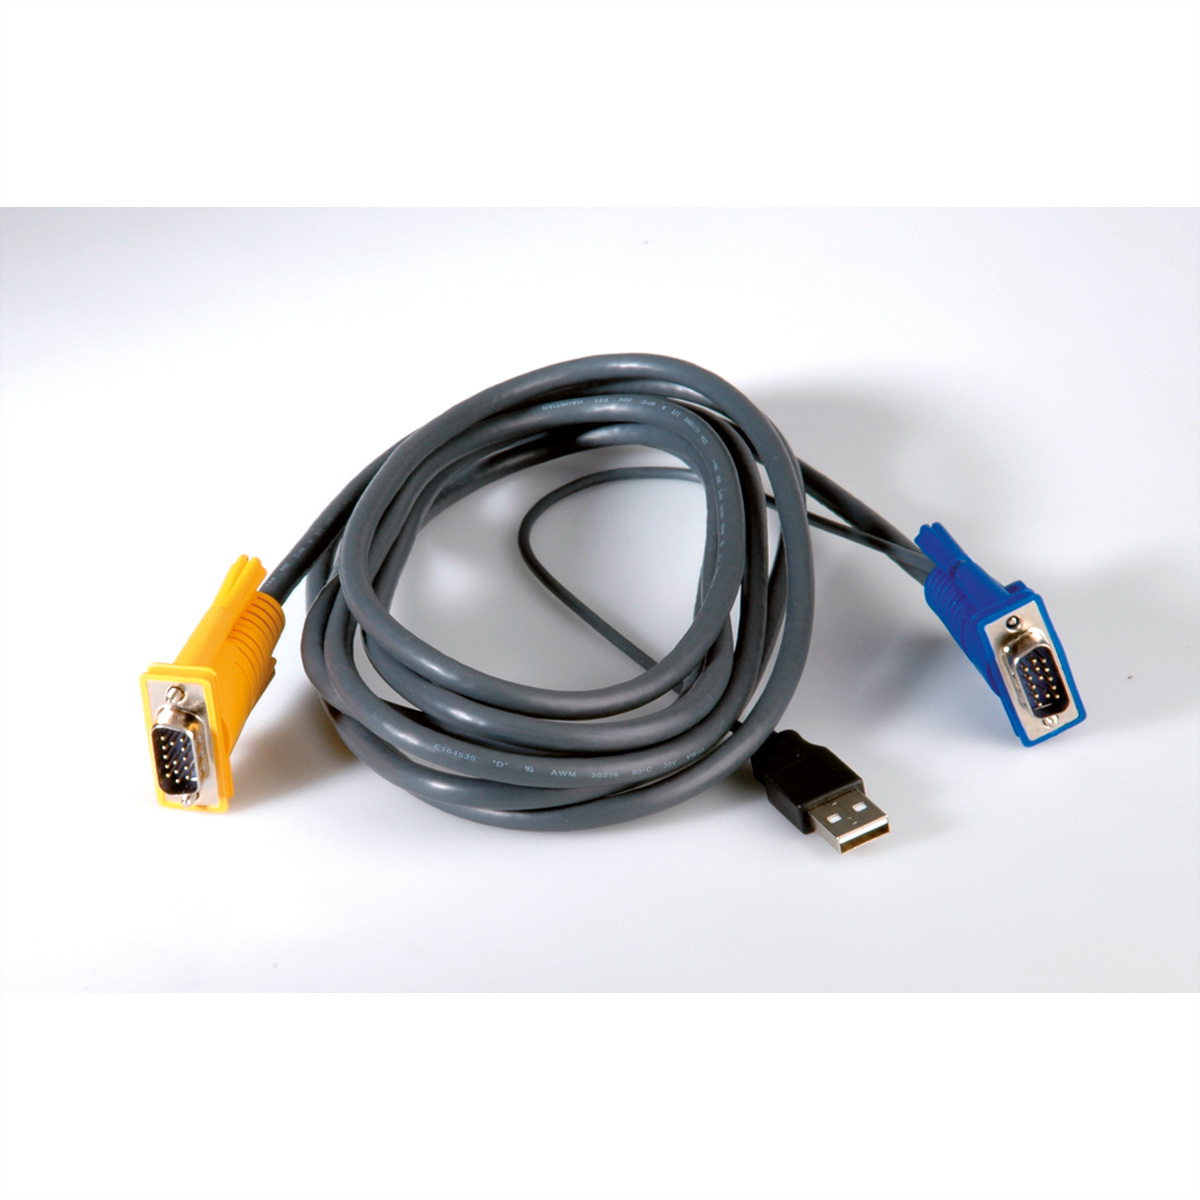 für 3 14.99.3222/.3223, USB VALUE (USB) m KVM-Kabel Kombikabel,